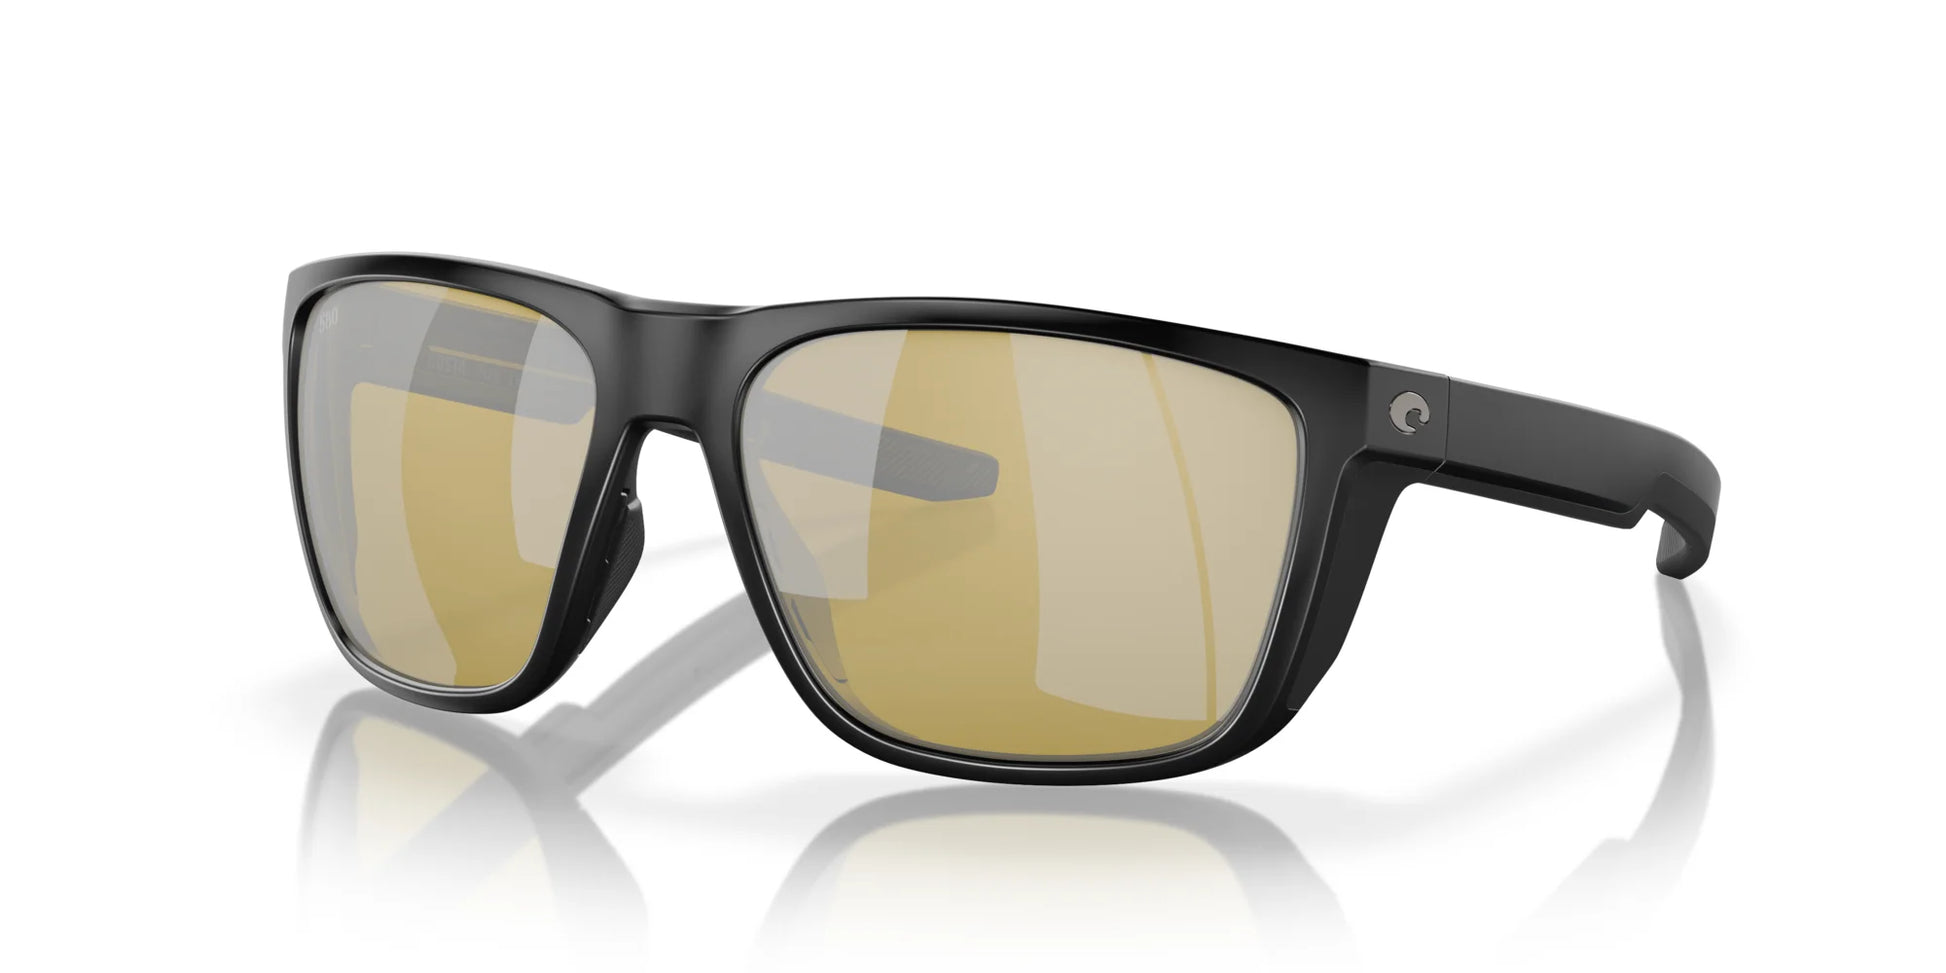 Costa FERG 6S9002 Sunglasses Matte Black / Sunrise Silver Mirror